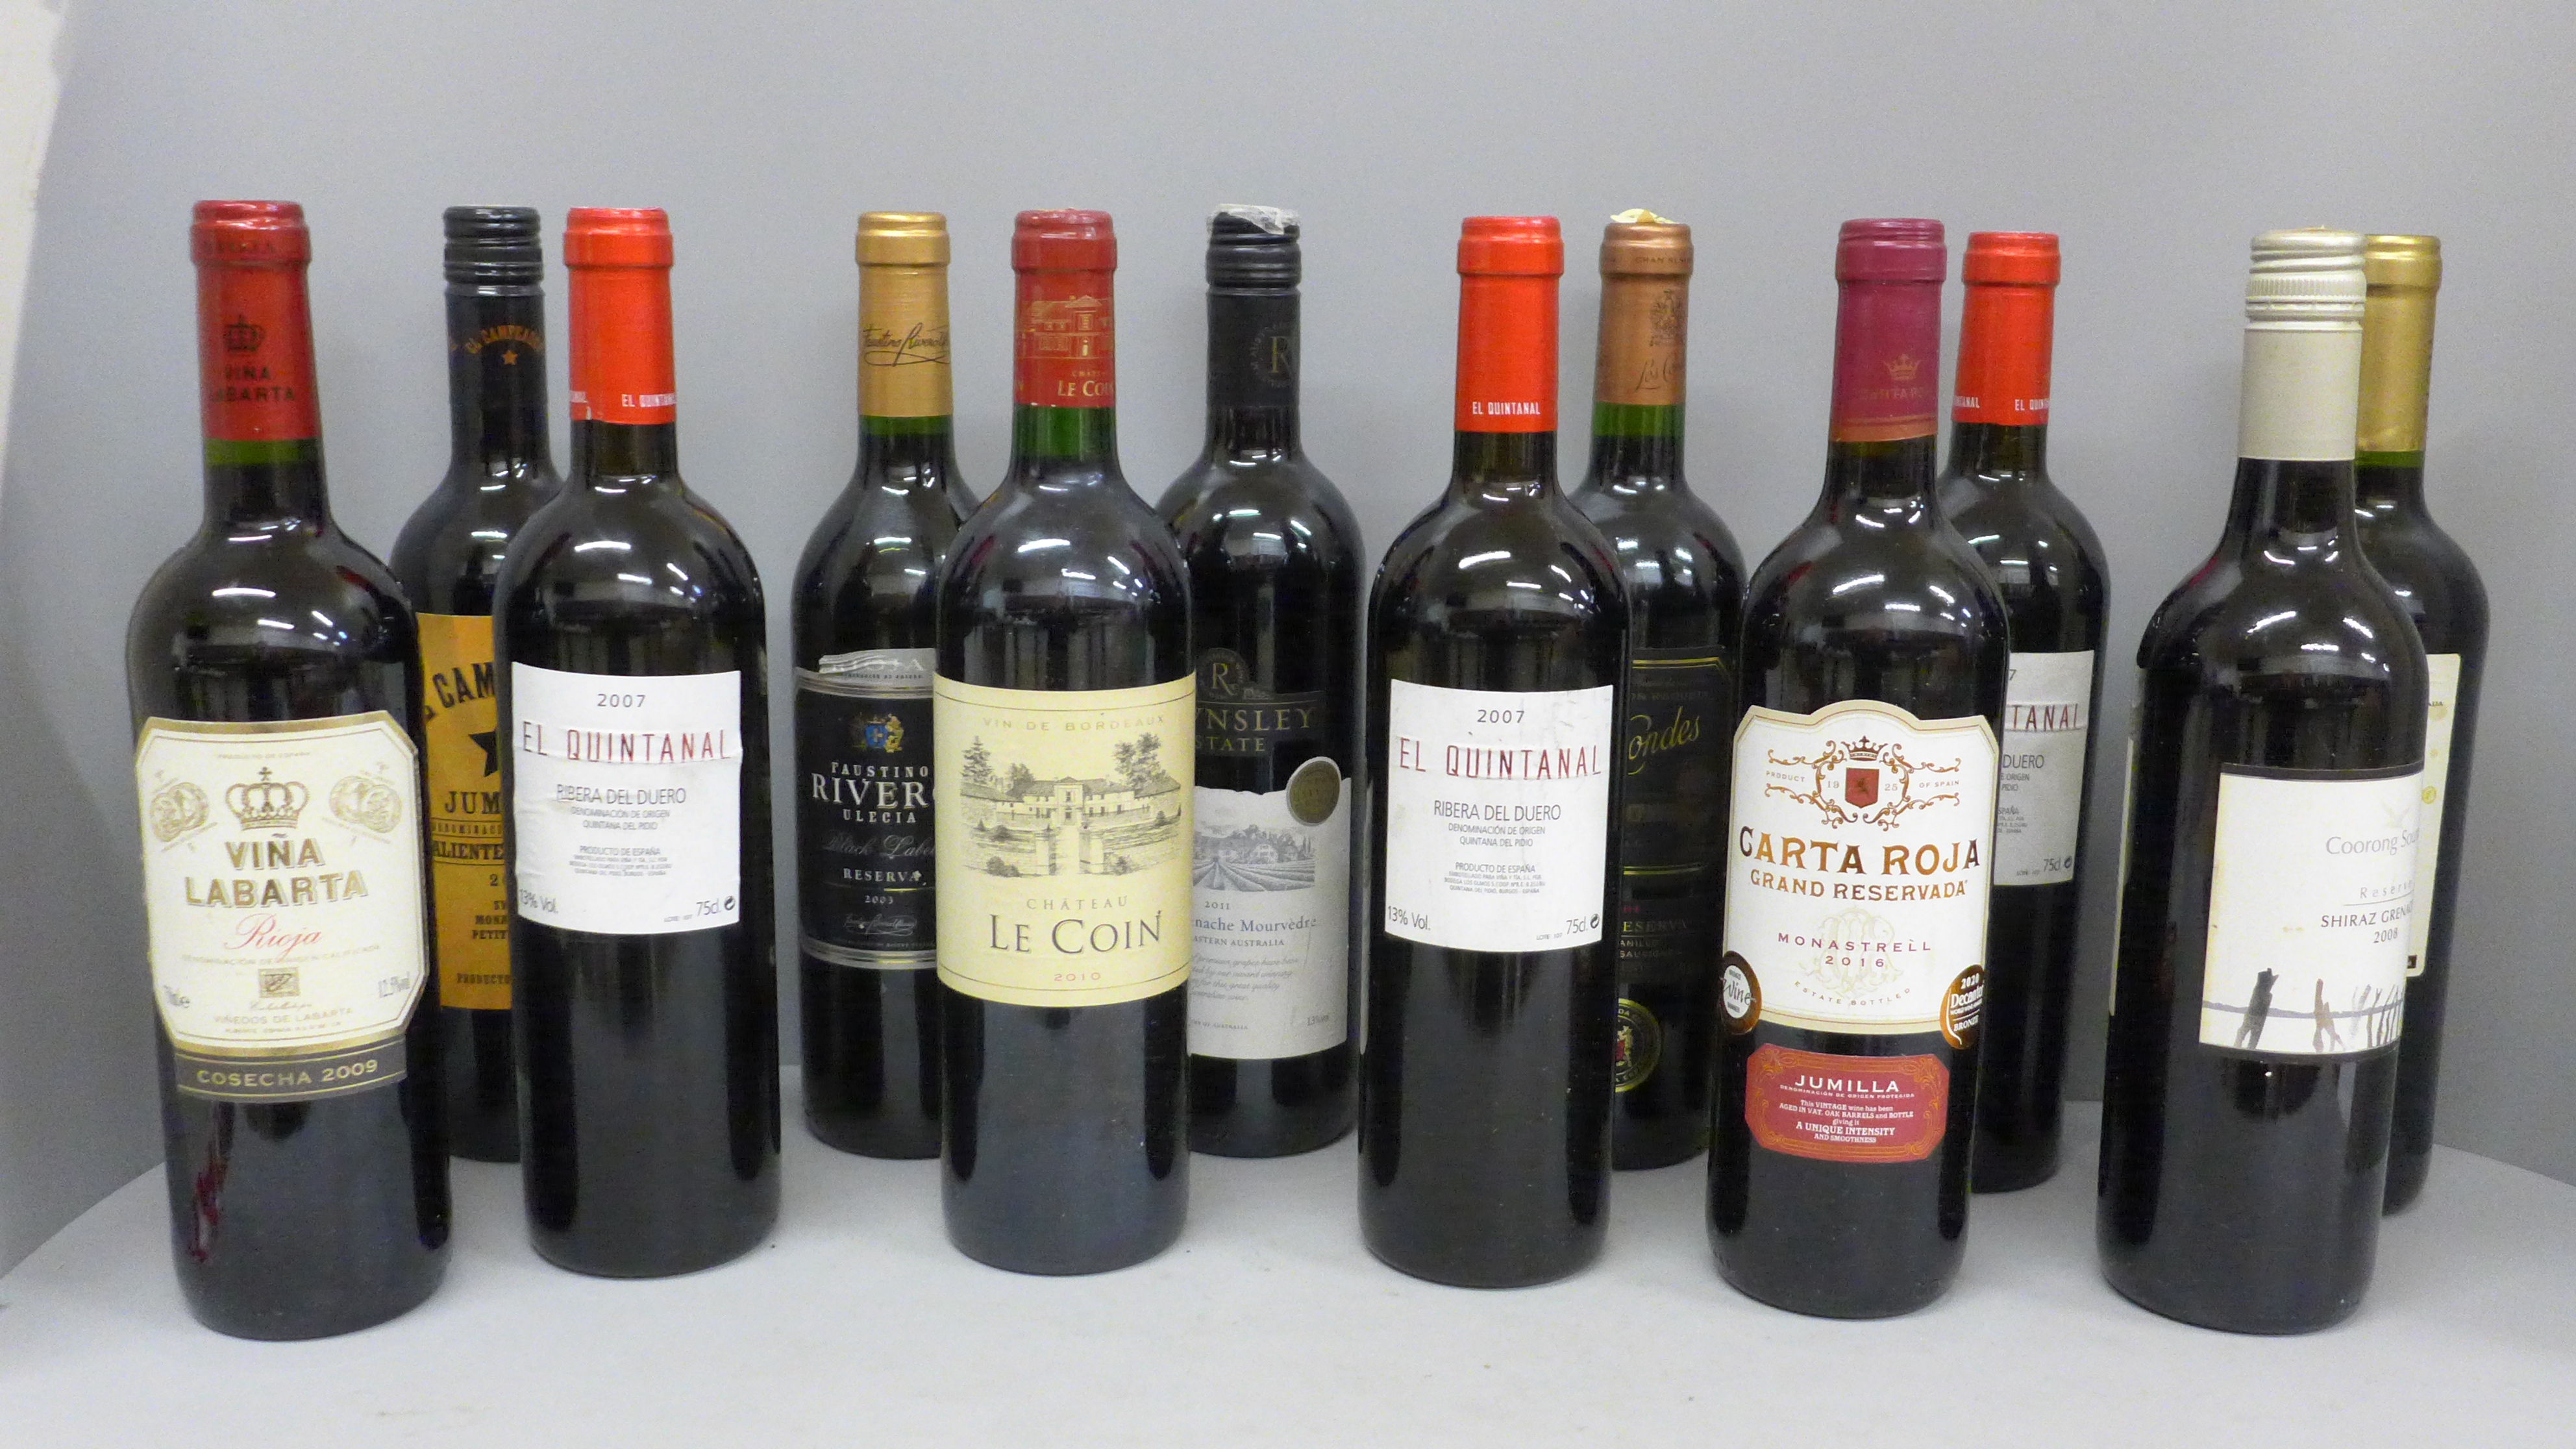 Twelve bottles of red wine including Faustino Rivero, El Campeador, Conde Rioja and Les Cordes